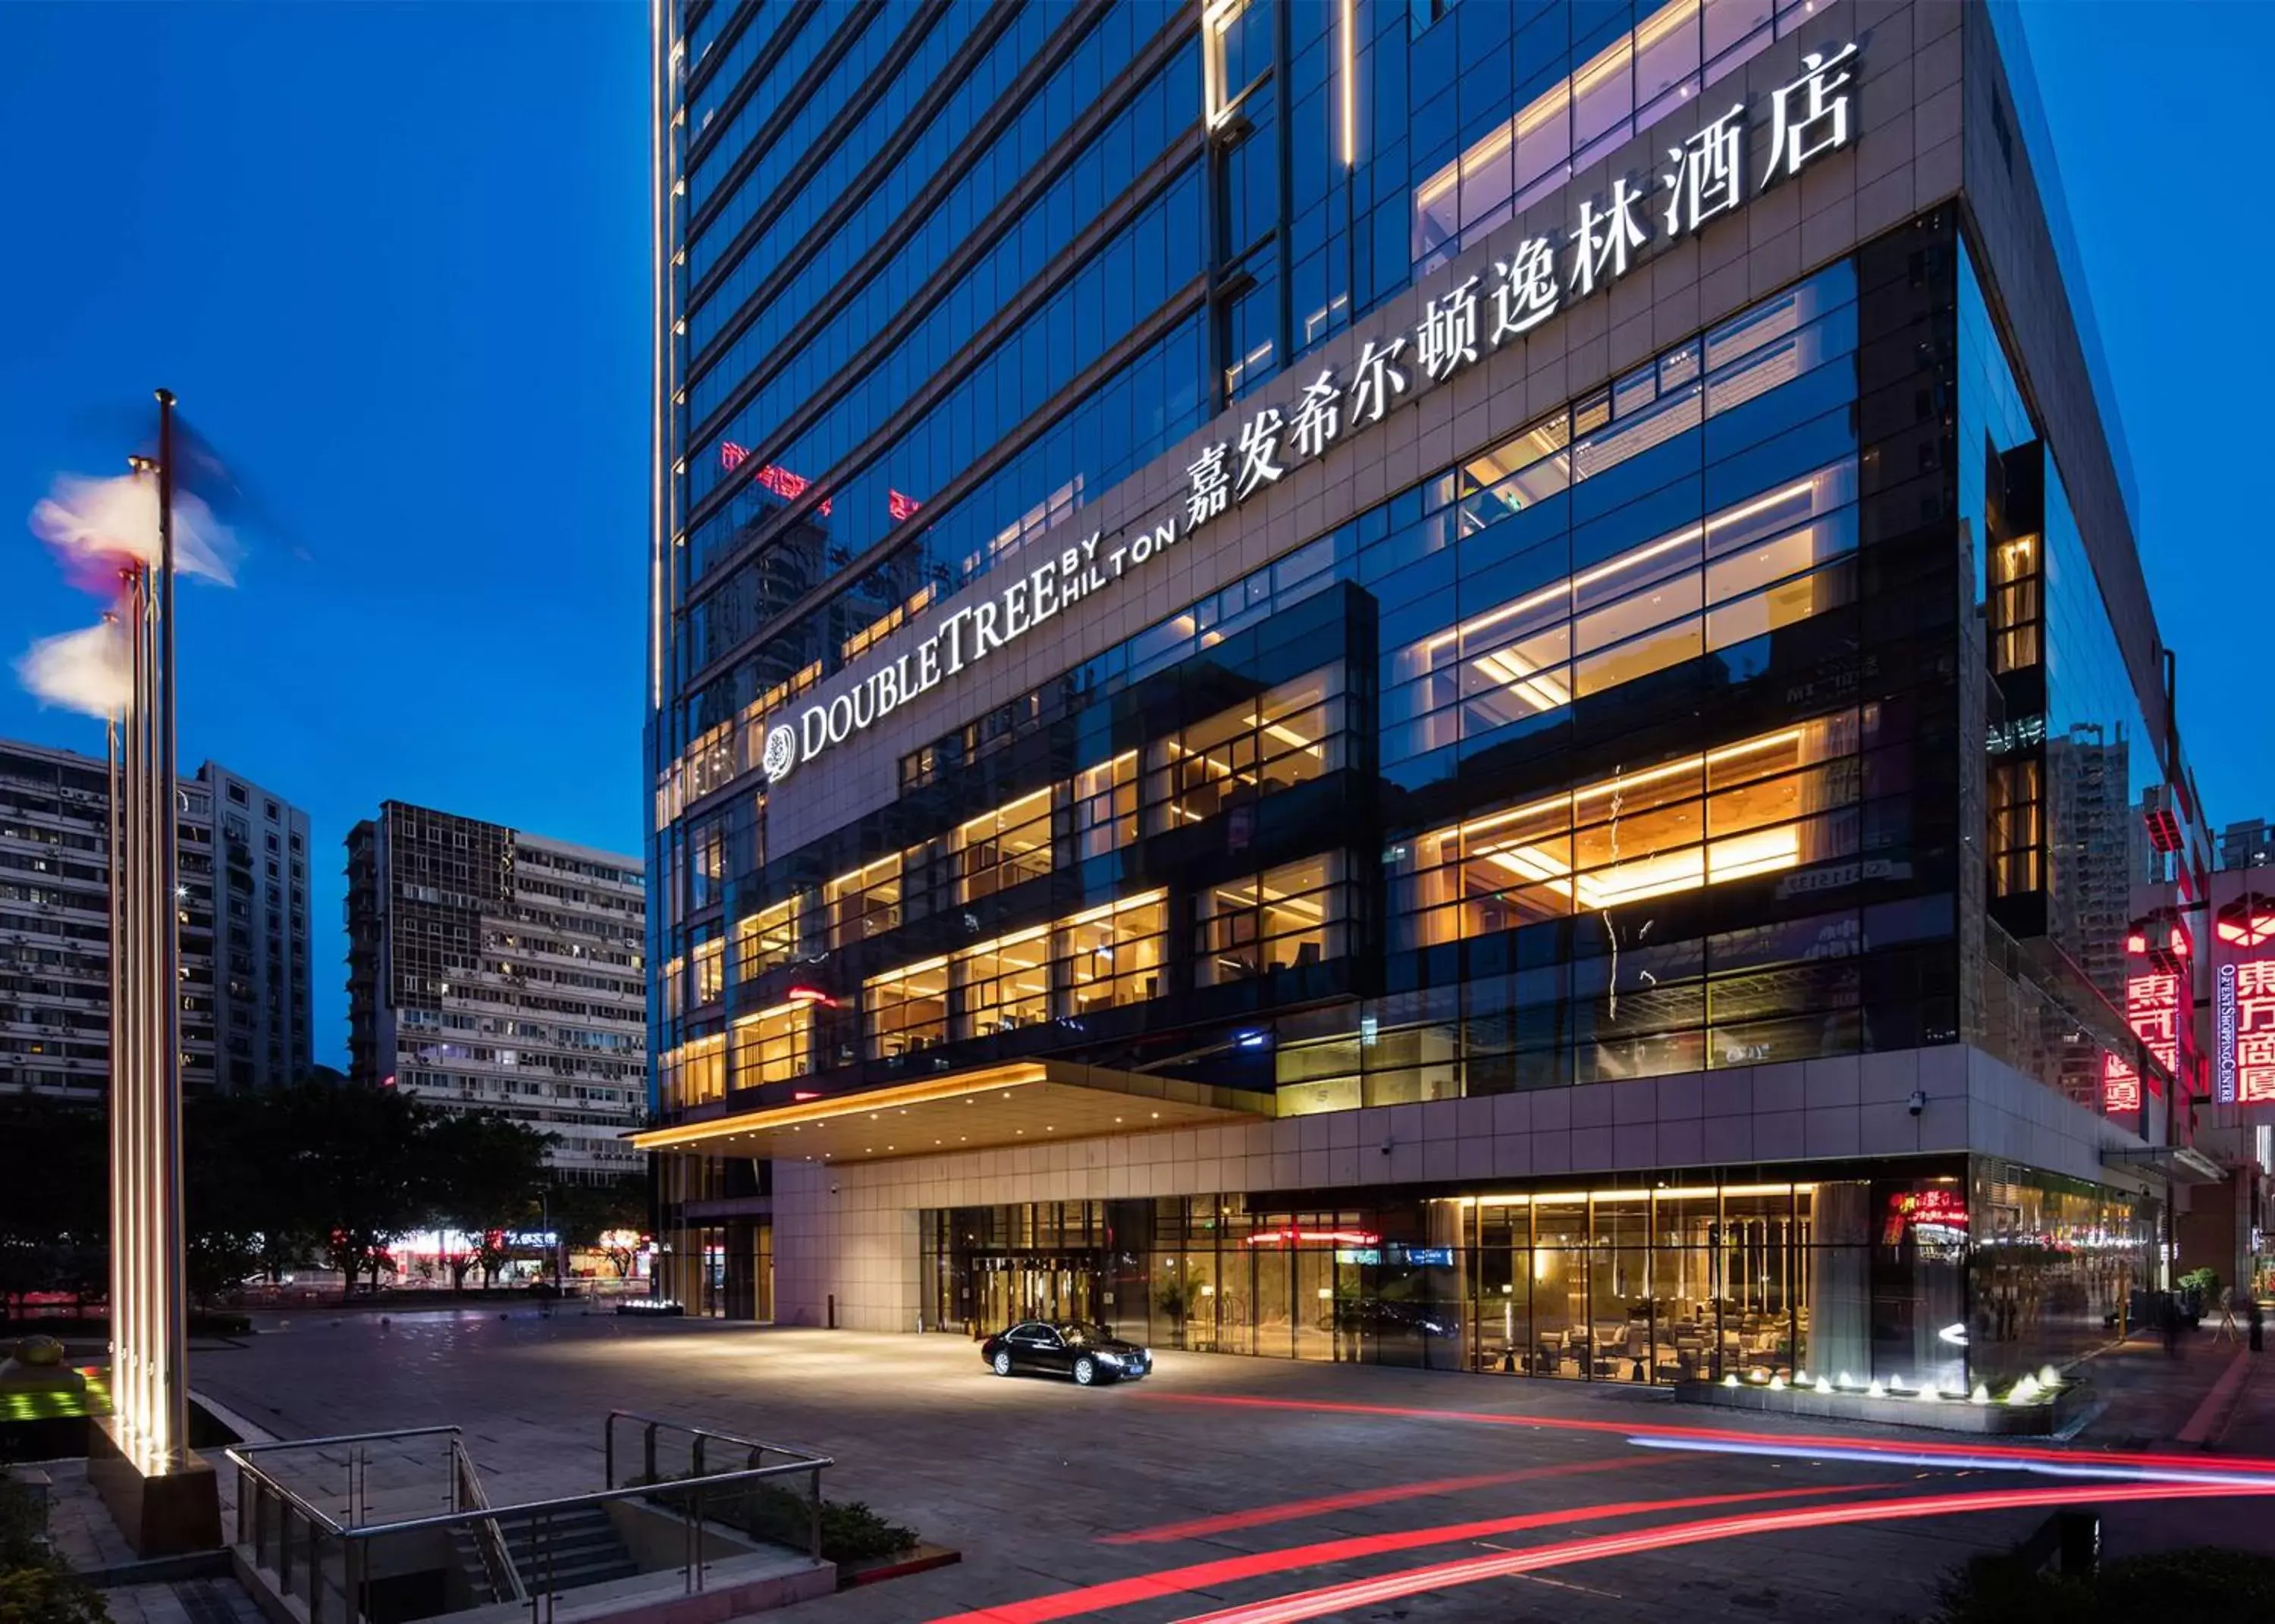 Property Building in DoubleTree by Hilton Chongqing - Nan'an